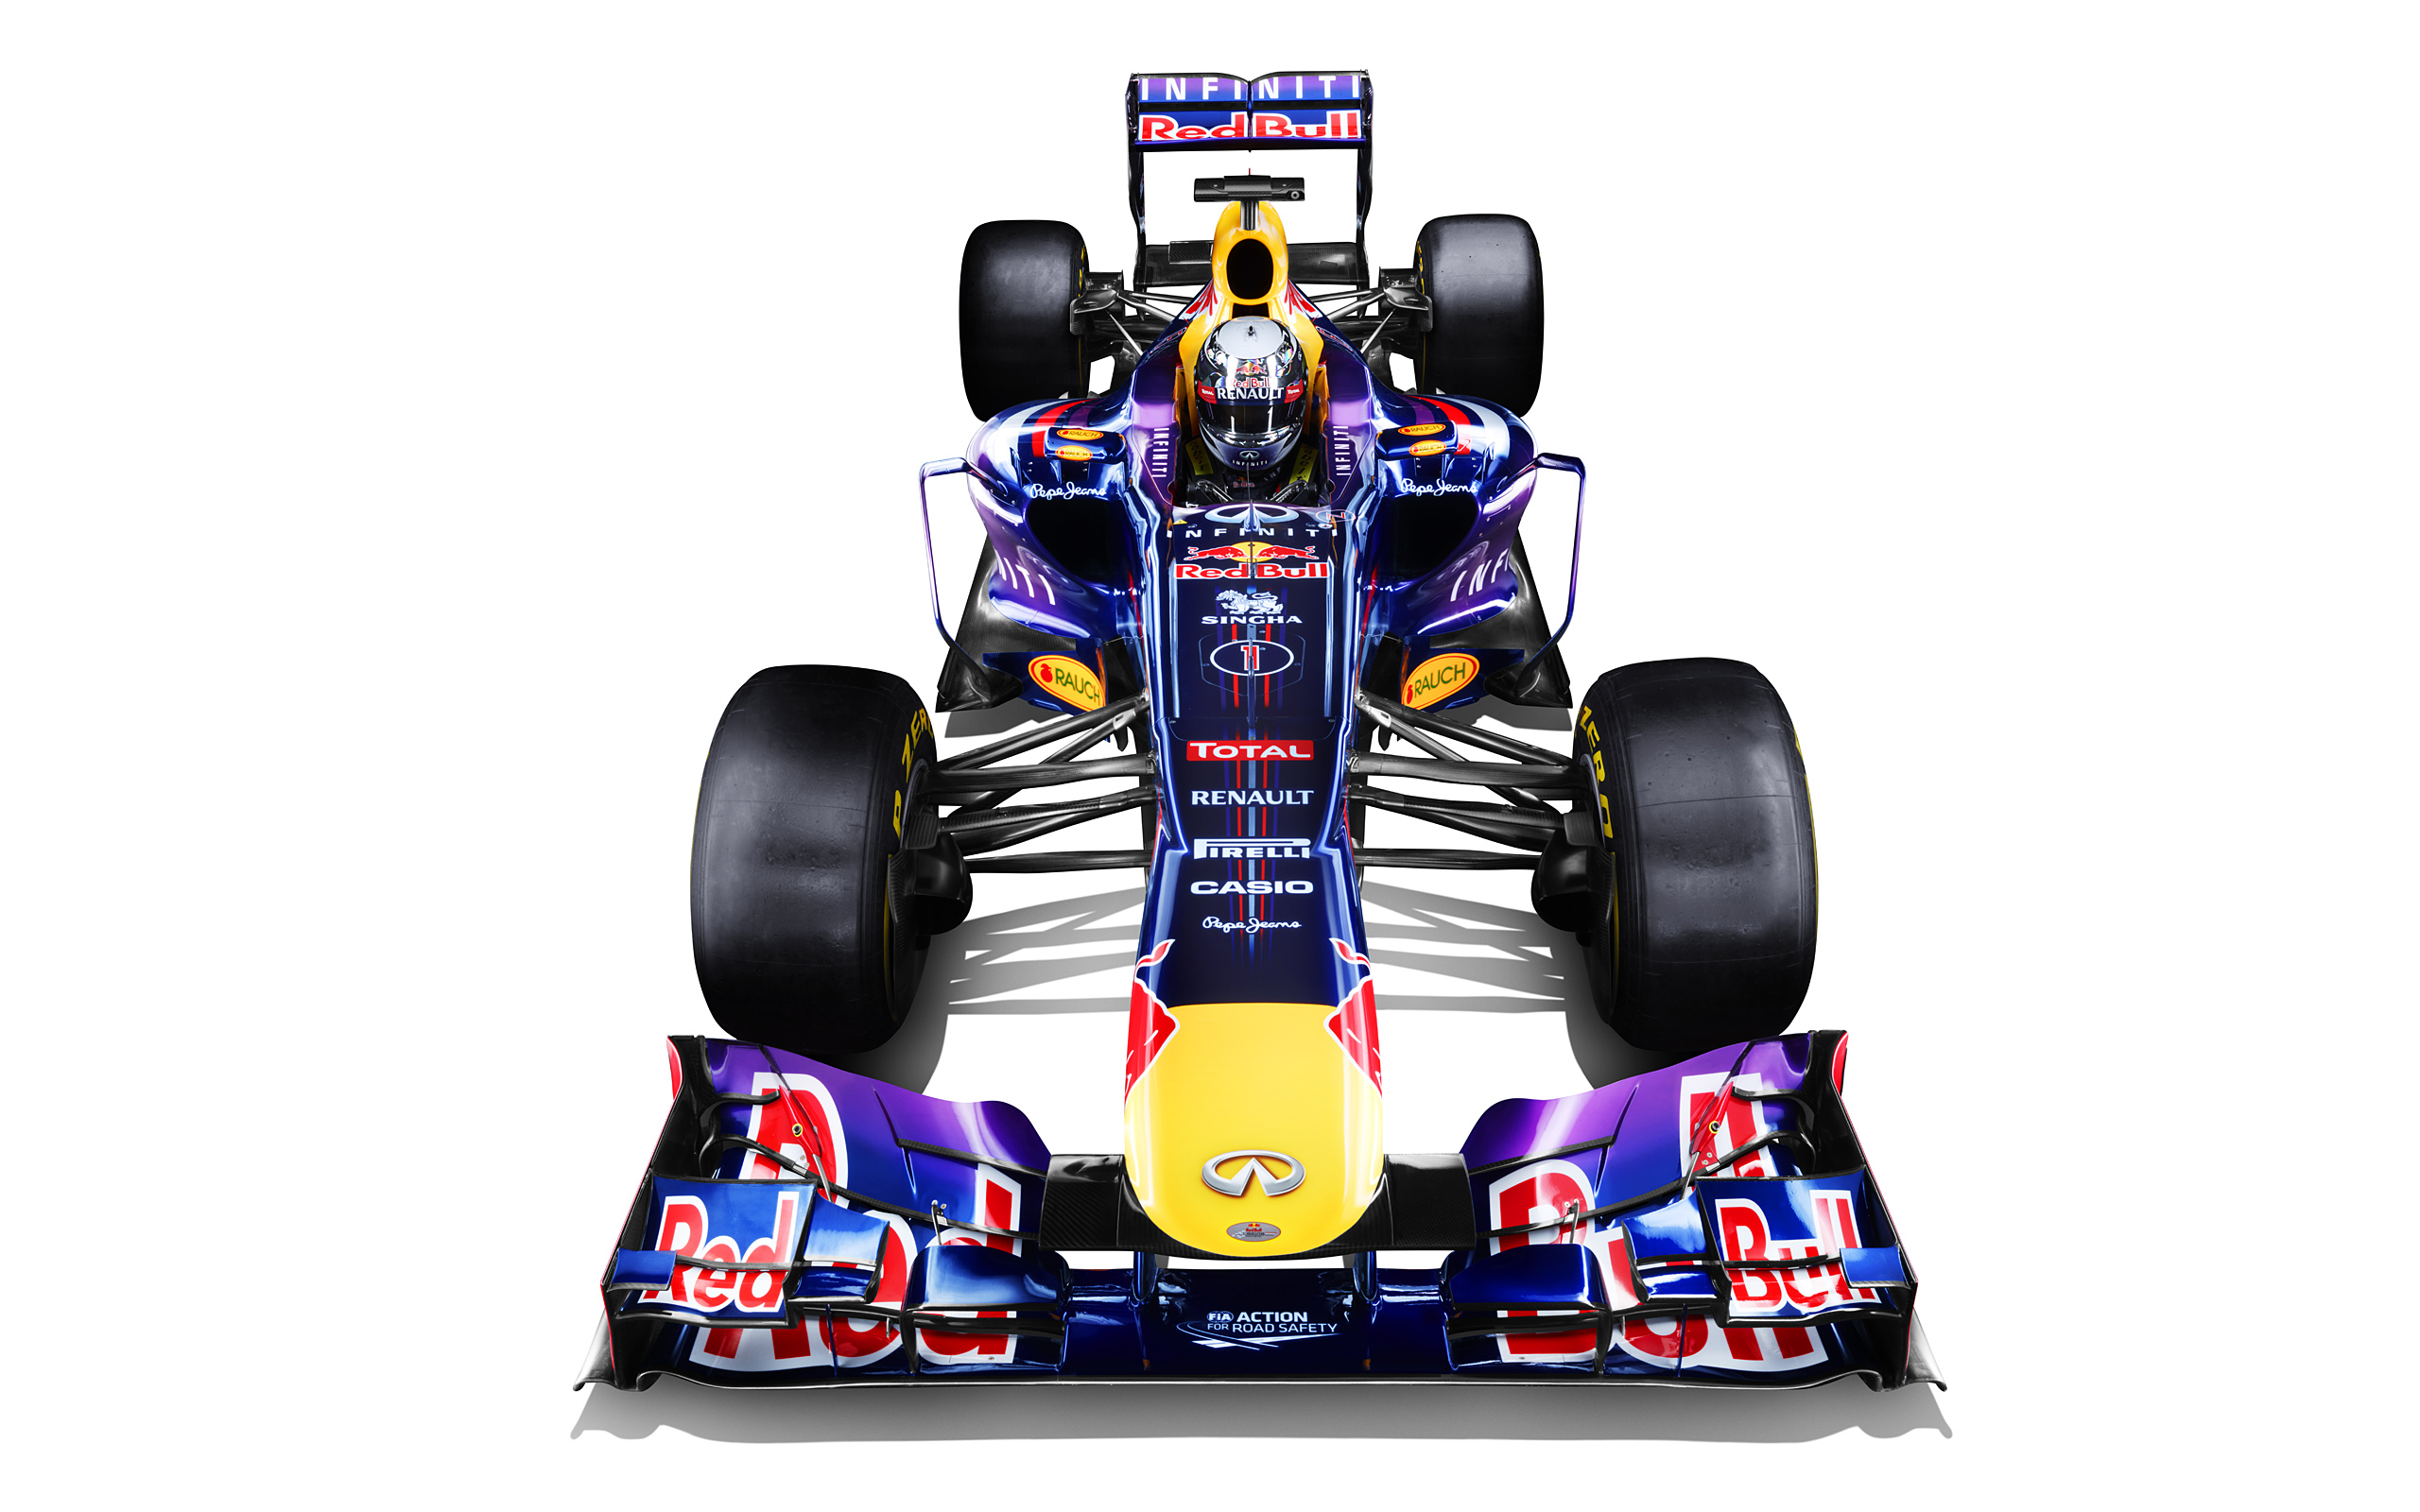  2013 Red Bull Racing RB9 Wallpaper.